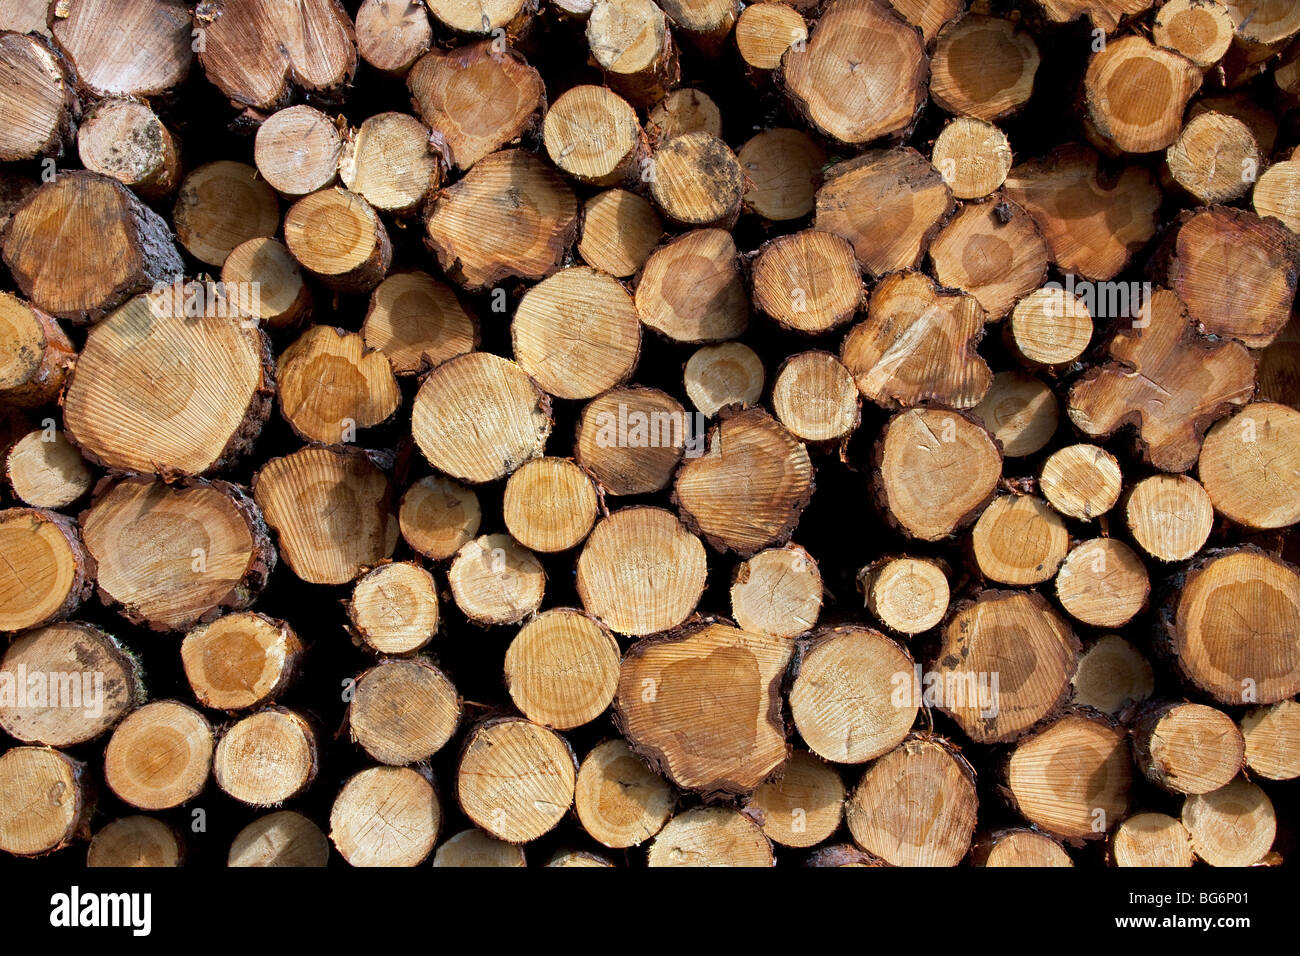 Industrie forestière montrant pile de grumes coupées / arbres / bois de forêt de pins Banque D'Images